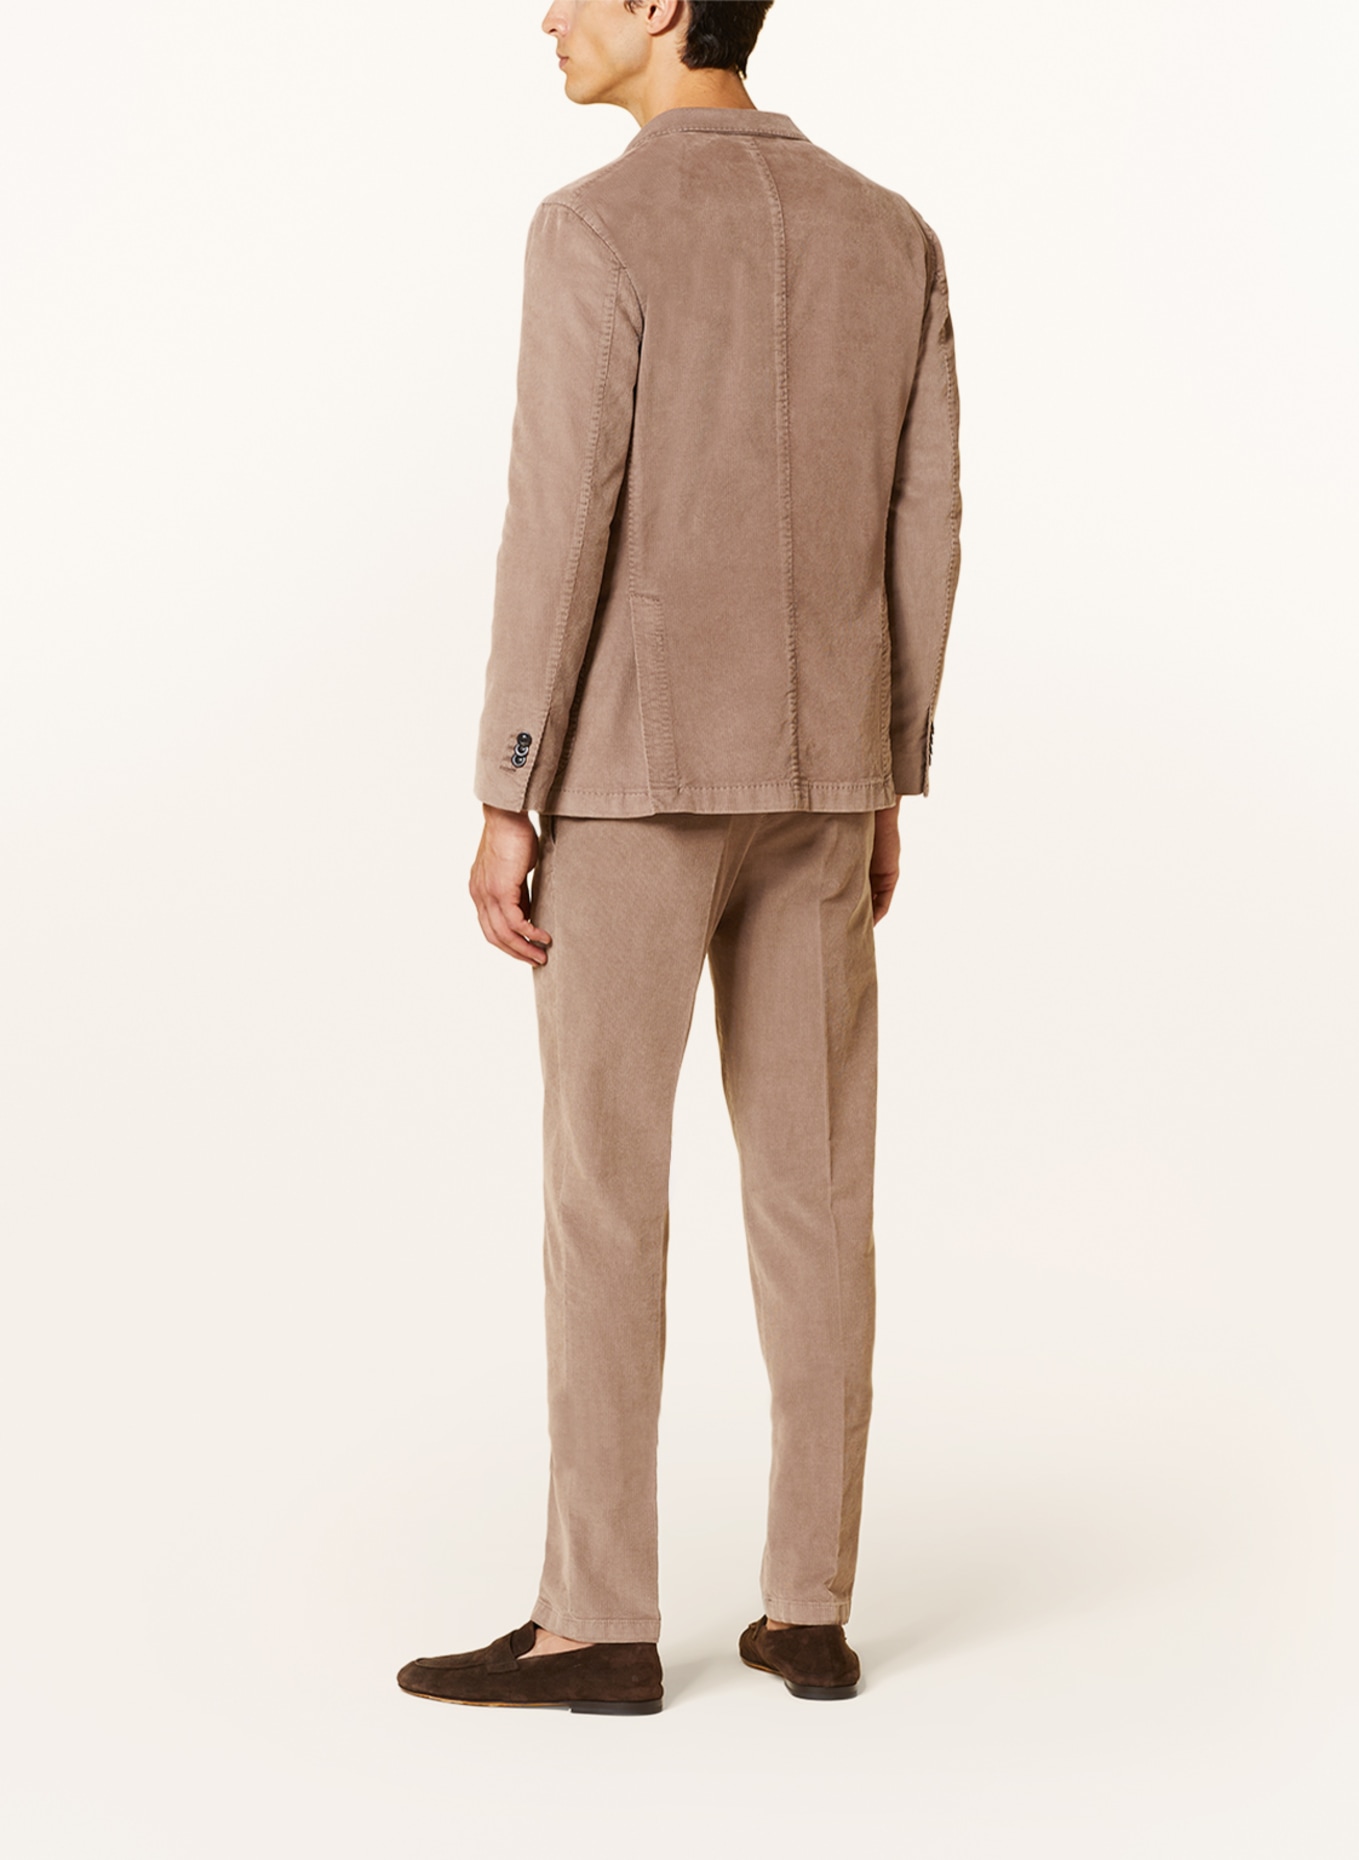 BOGLIOLI Suit jacket slim fit in corduroy, Color: 438 Light Brown (Image 3)